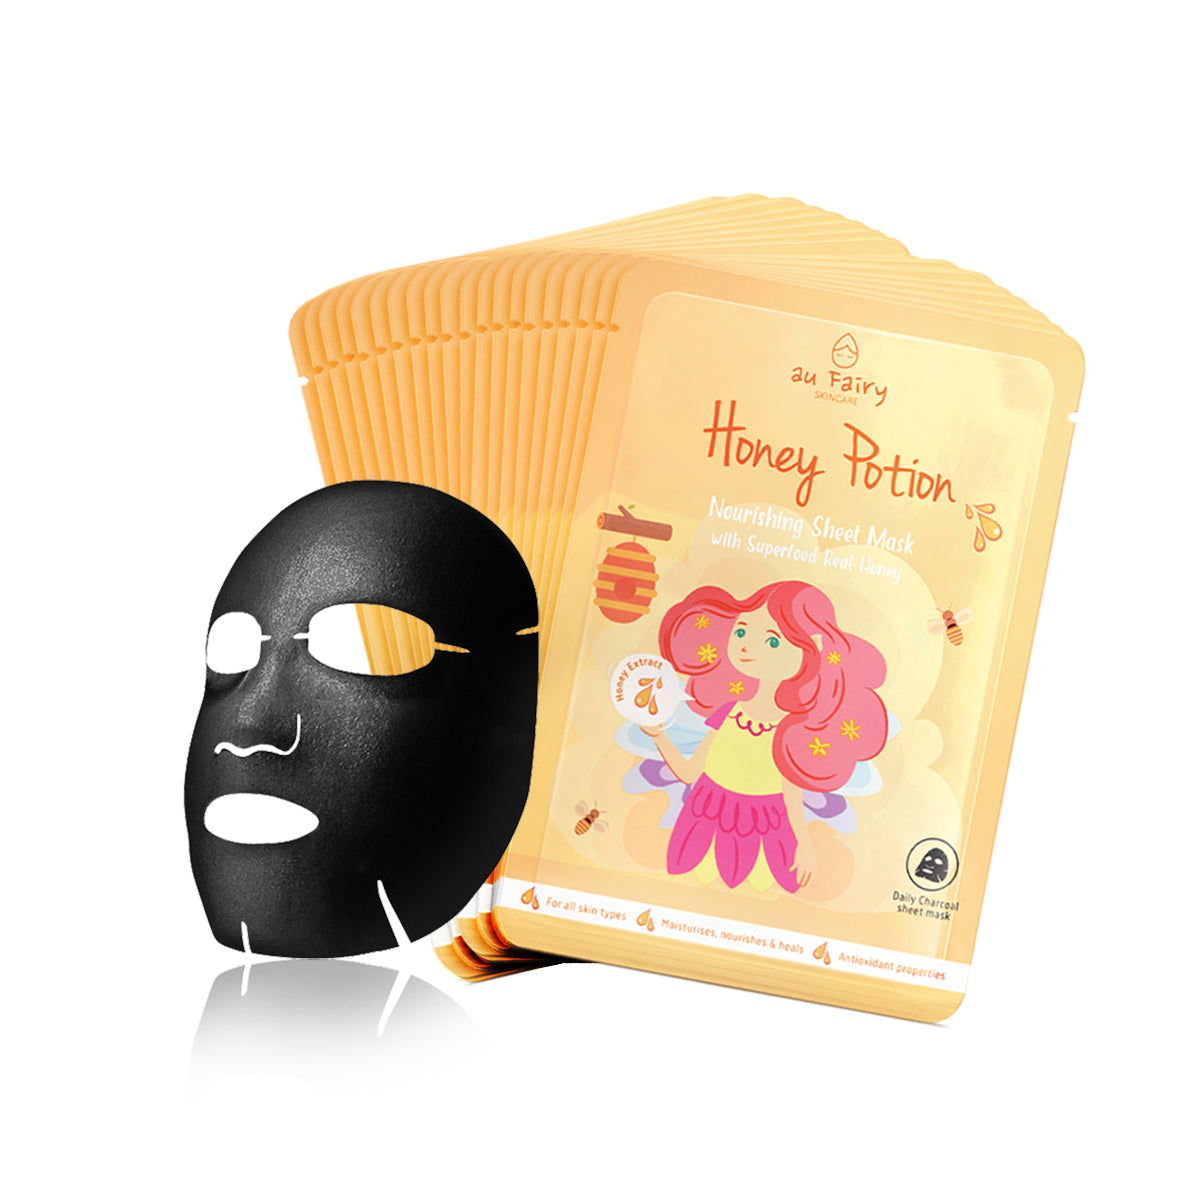 BUY 1 FREE 1: AUFAIRY Honey Potion Nourishing Mask - Honey Essence